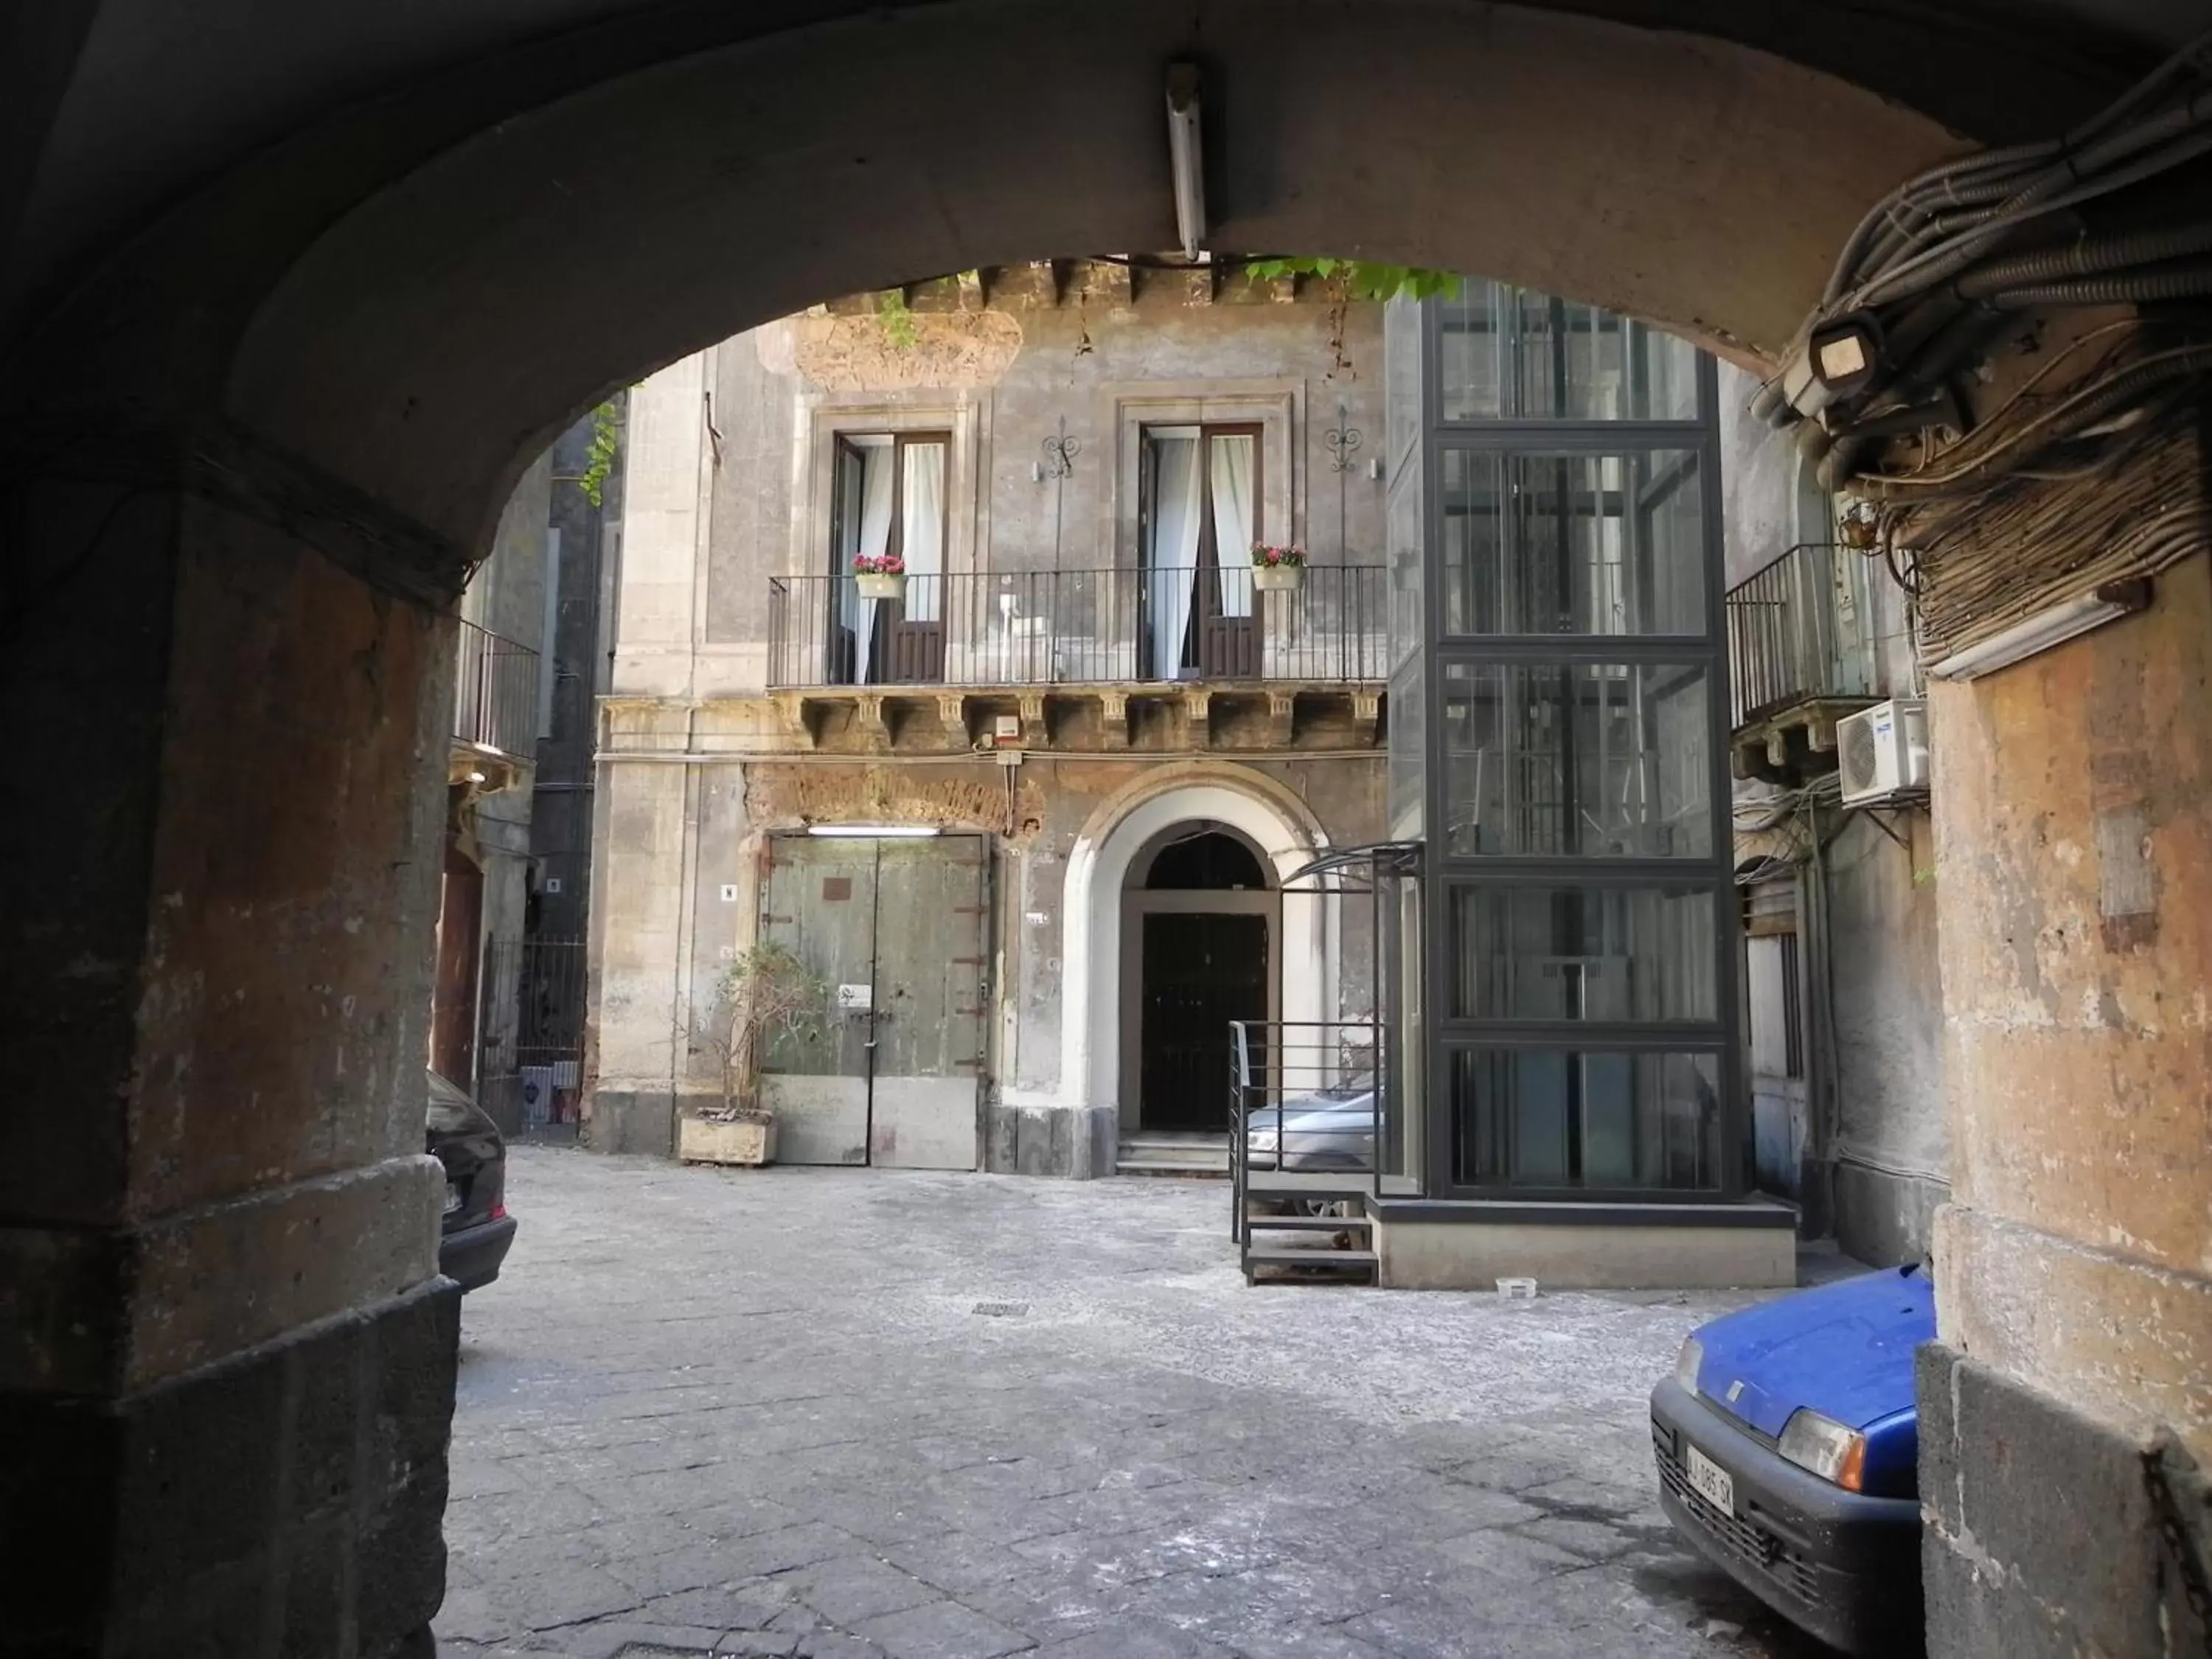 Facade/entrance in Palazzo del Verga